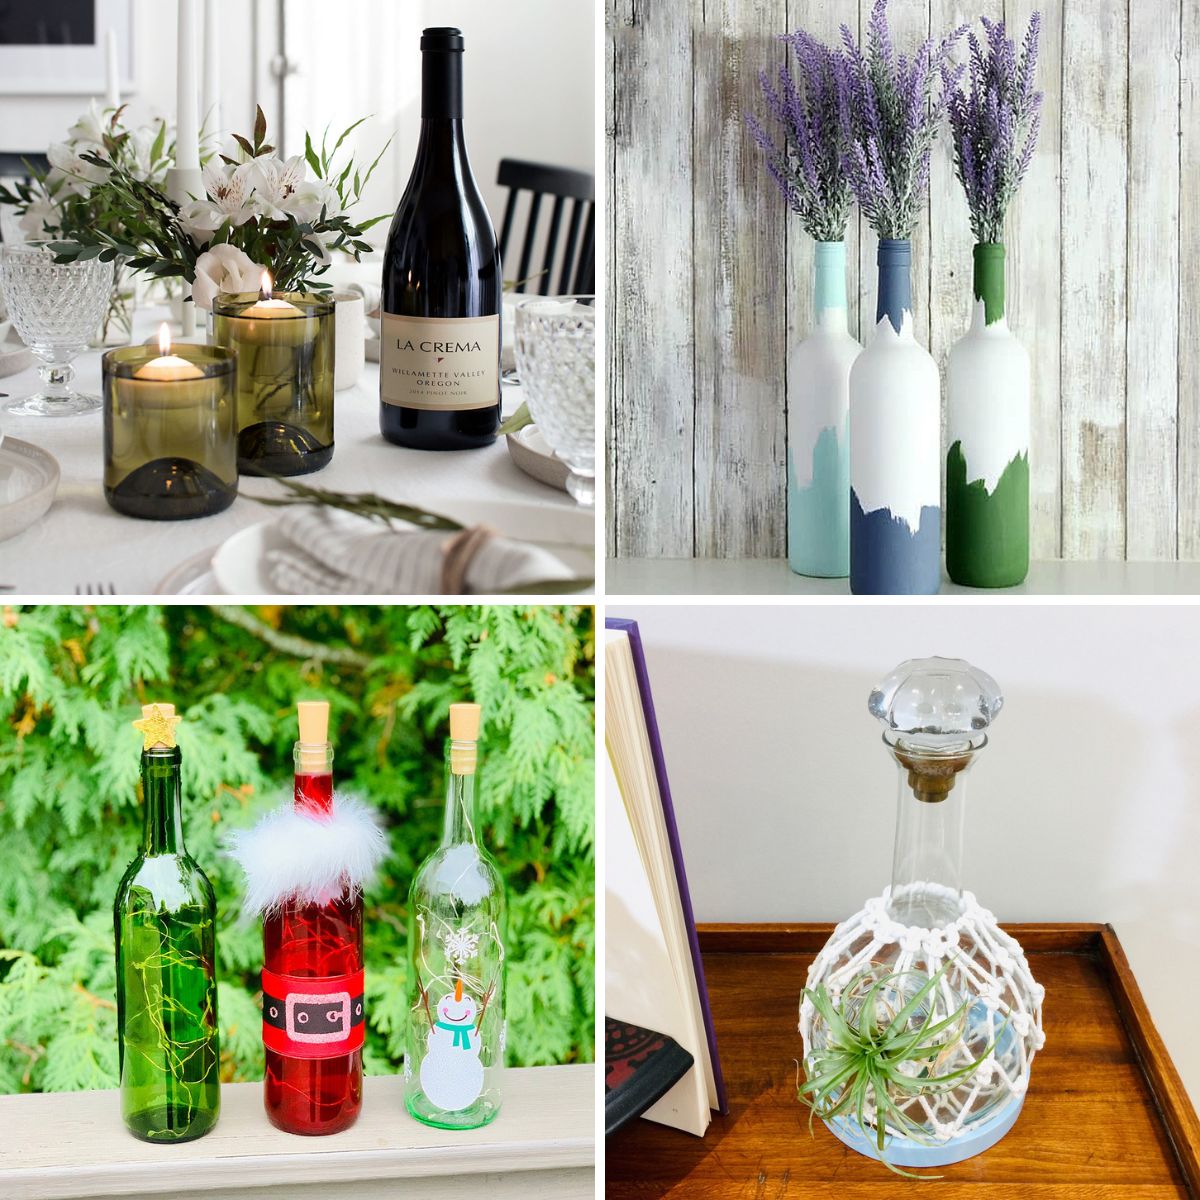 Vase en verre dépoli  Wine bottle crafts, Bottle crafts, Glass